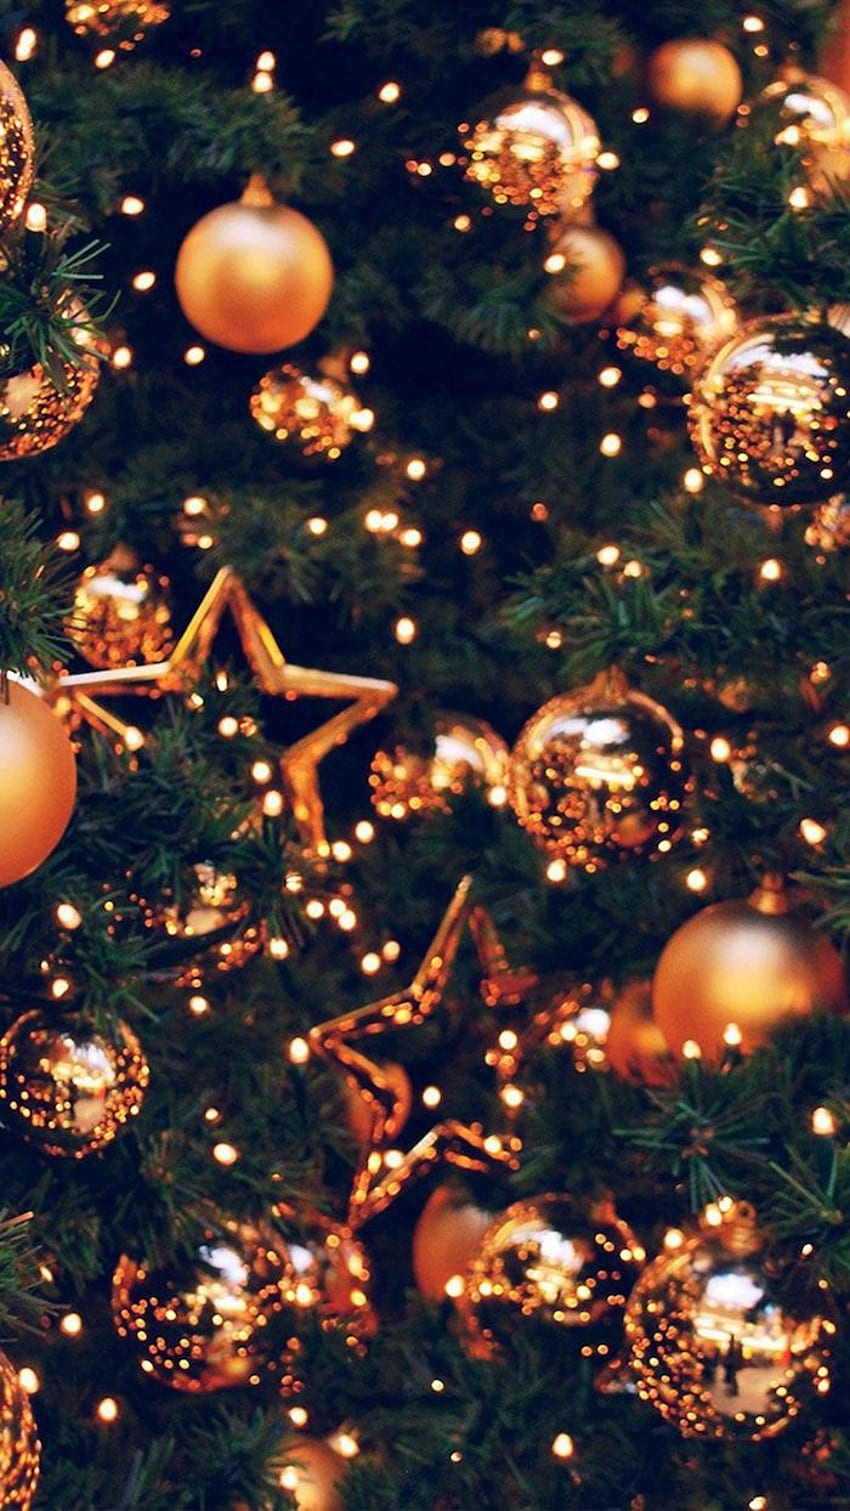 Christmas tree with gold ornaments and stars - Christmas, Christmas lights